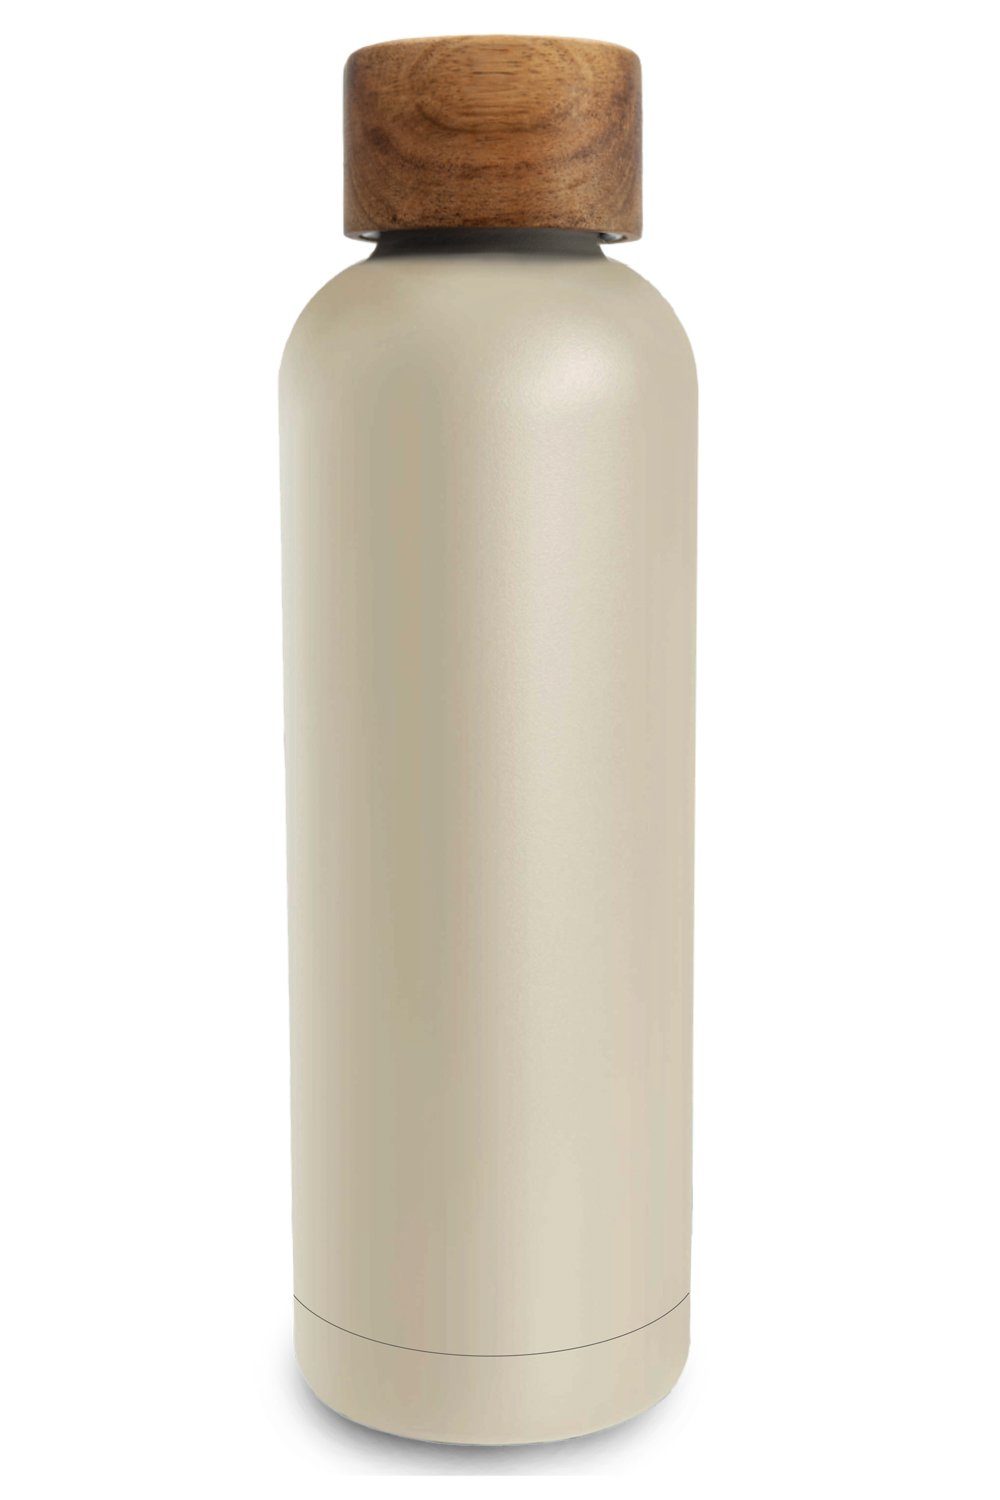 TRENDY AND NEW Trinkflasche T&N Edelstahl Trinkflasche 500ml - Wood Edition, Thermosflasche 500 ml für Büro, auslaufsichere, robuste, isolierte Wasserflasche 0,5l für Kohlensäure, Thermoskanne 500ml für unterwegs, Isolierflasche für Tee & Kaffee, hält 14h HEISS 29h EISKALT, Flasche für Sprudel-Wasser